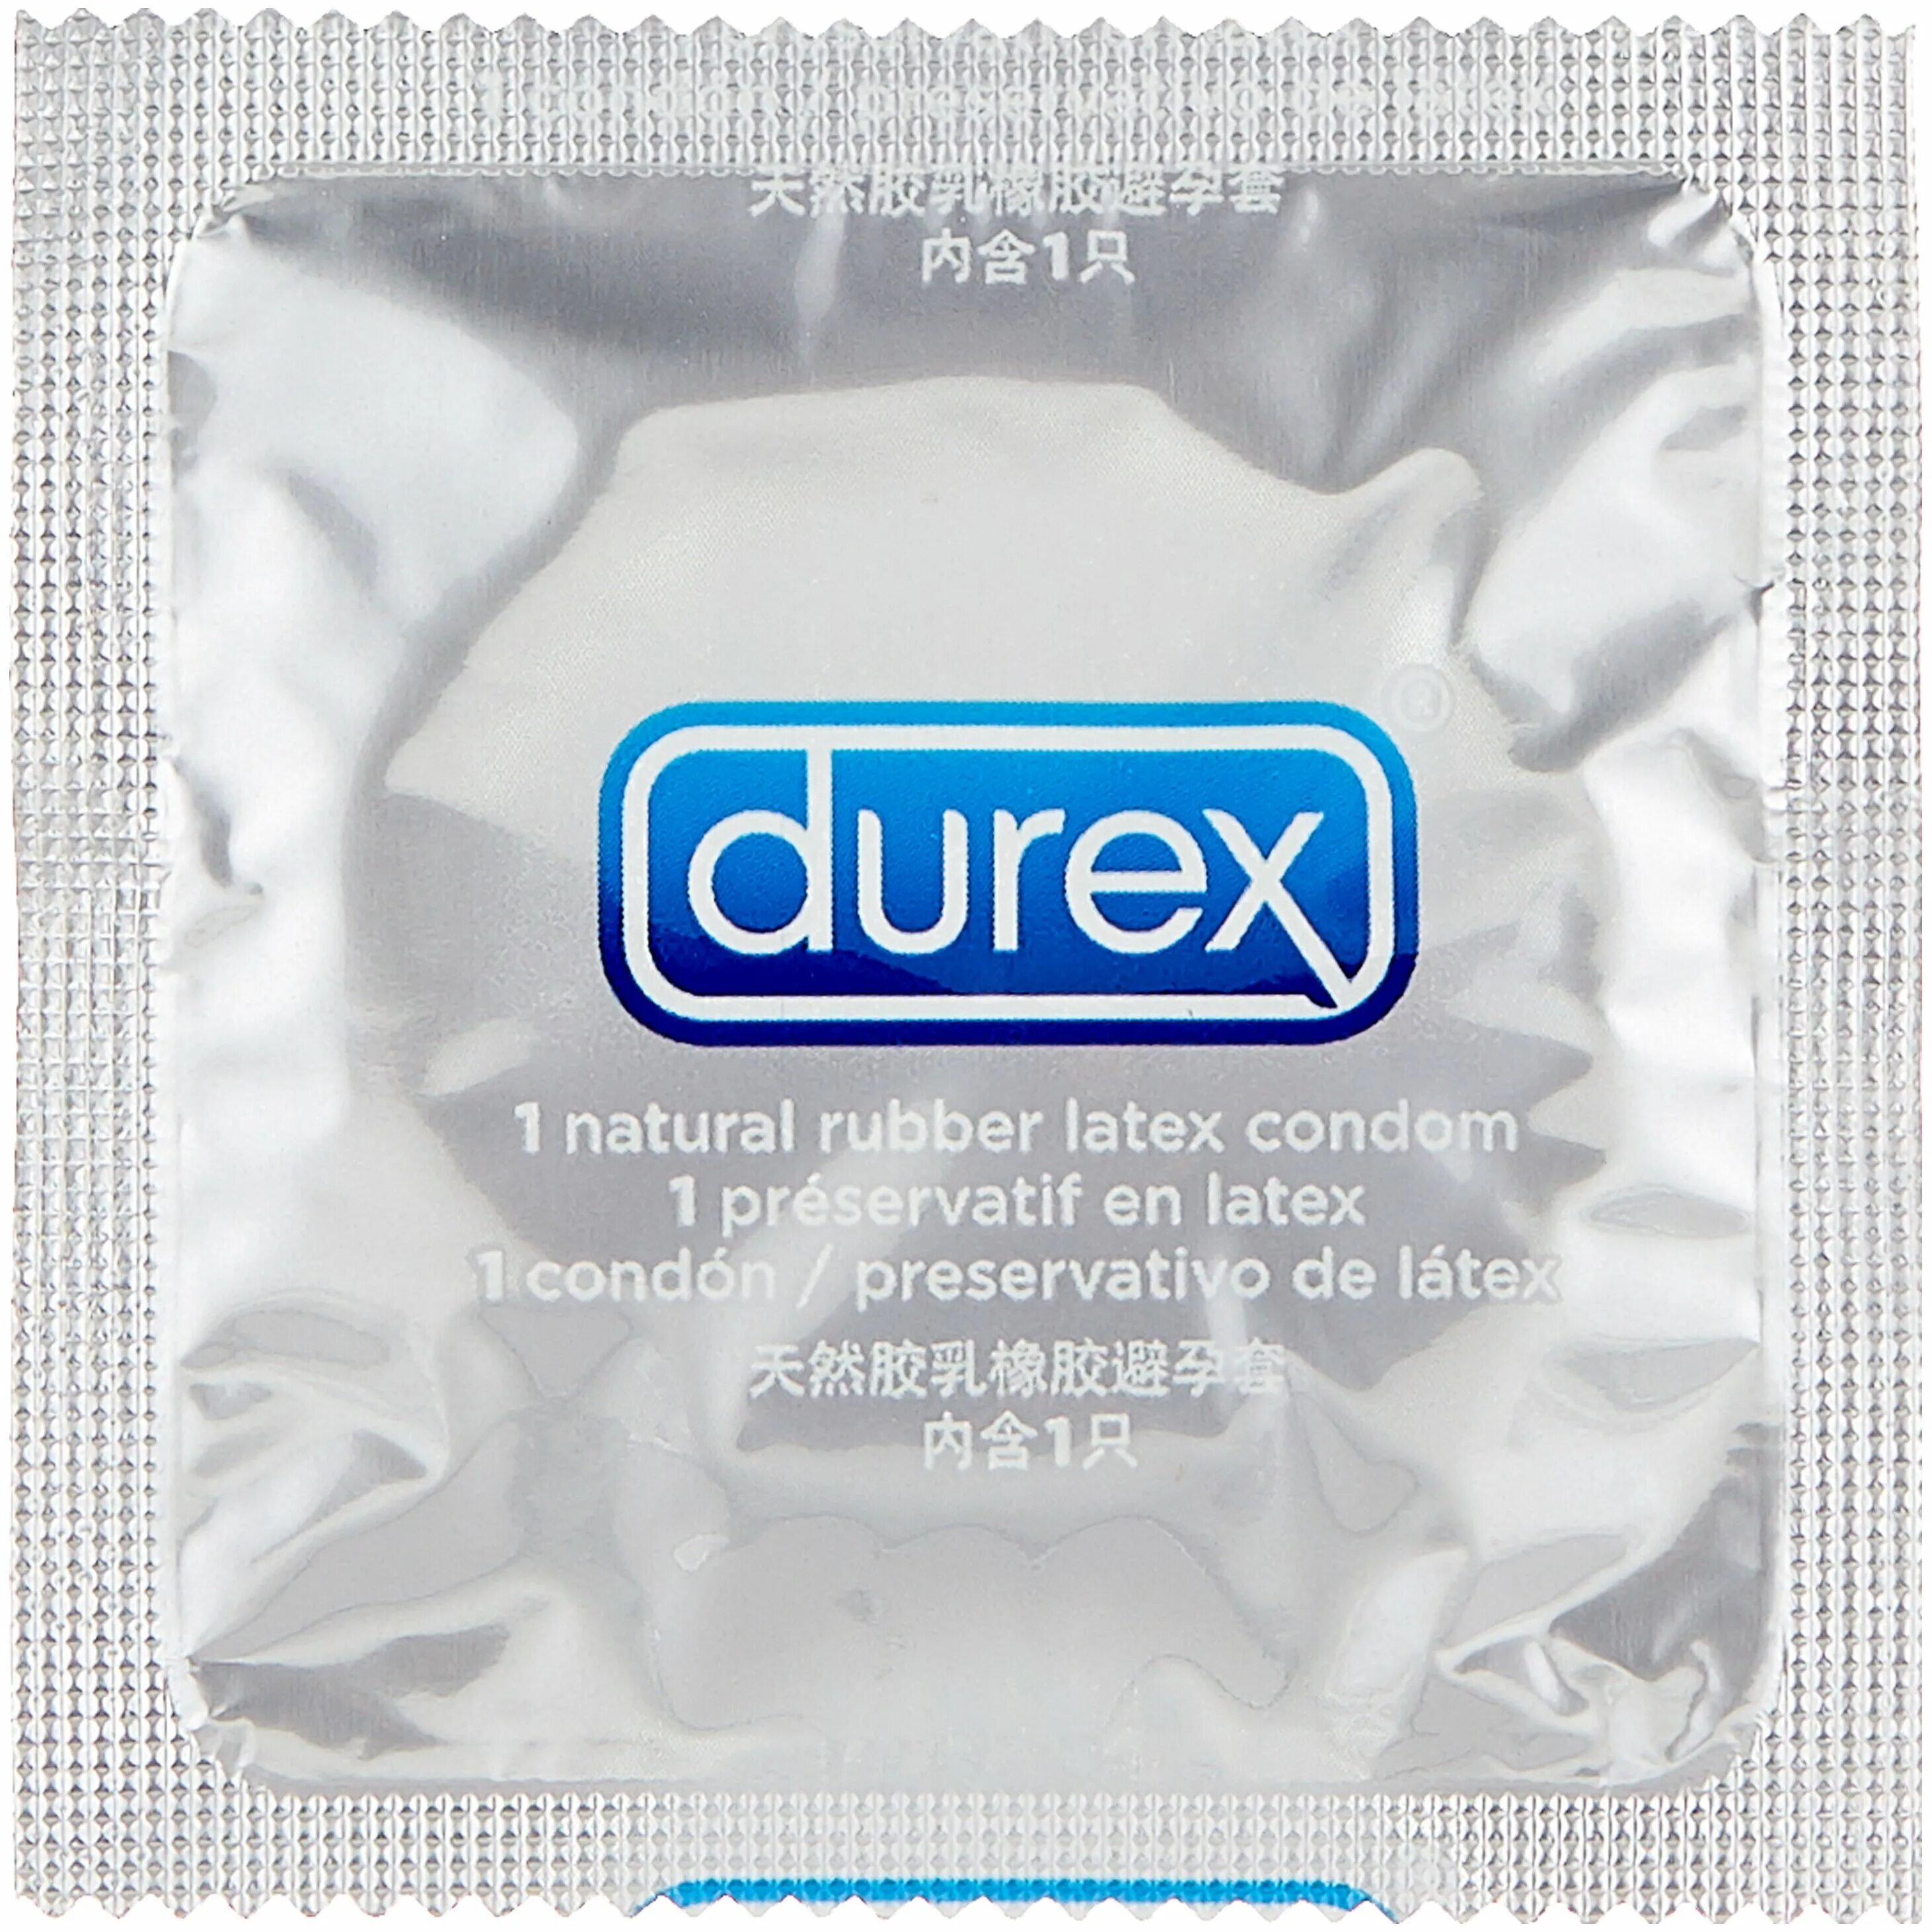 Презервативы дюрекс Лонг плей. Презерватив дюрекс Перформа Лонг плей. Durex презервативы 12 штук Performa. Durex с анестетиком.